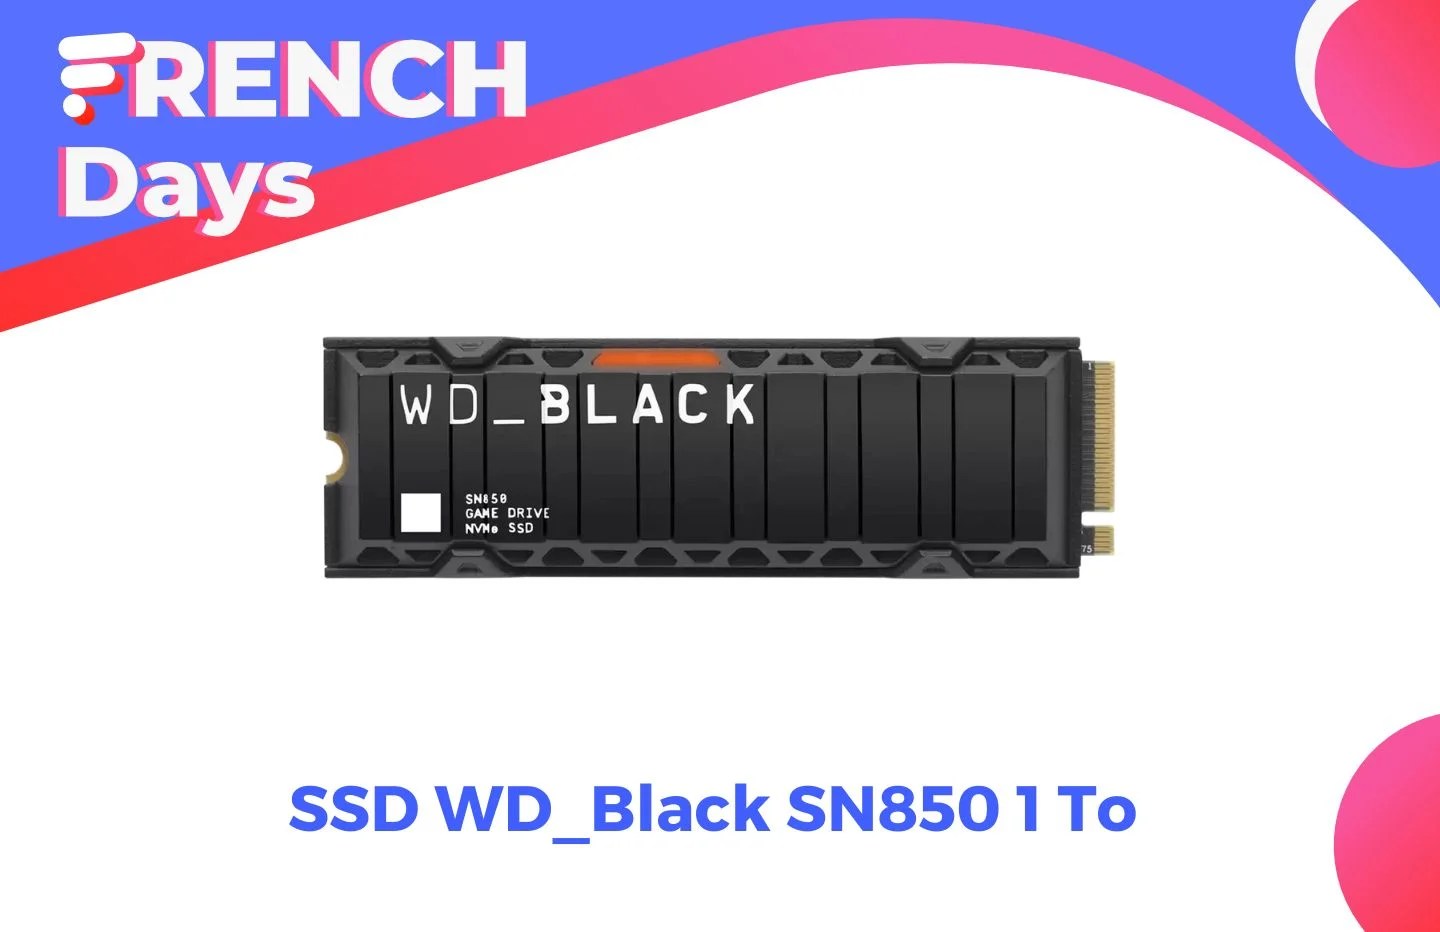 Idéal pour PS5, le SSD WD_BLACK SN850 1 To est à -26 % lors des French Days